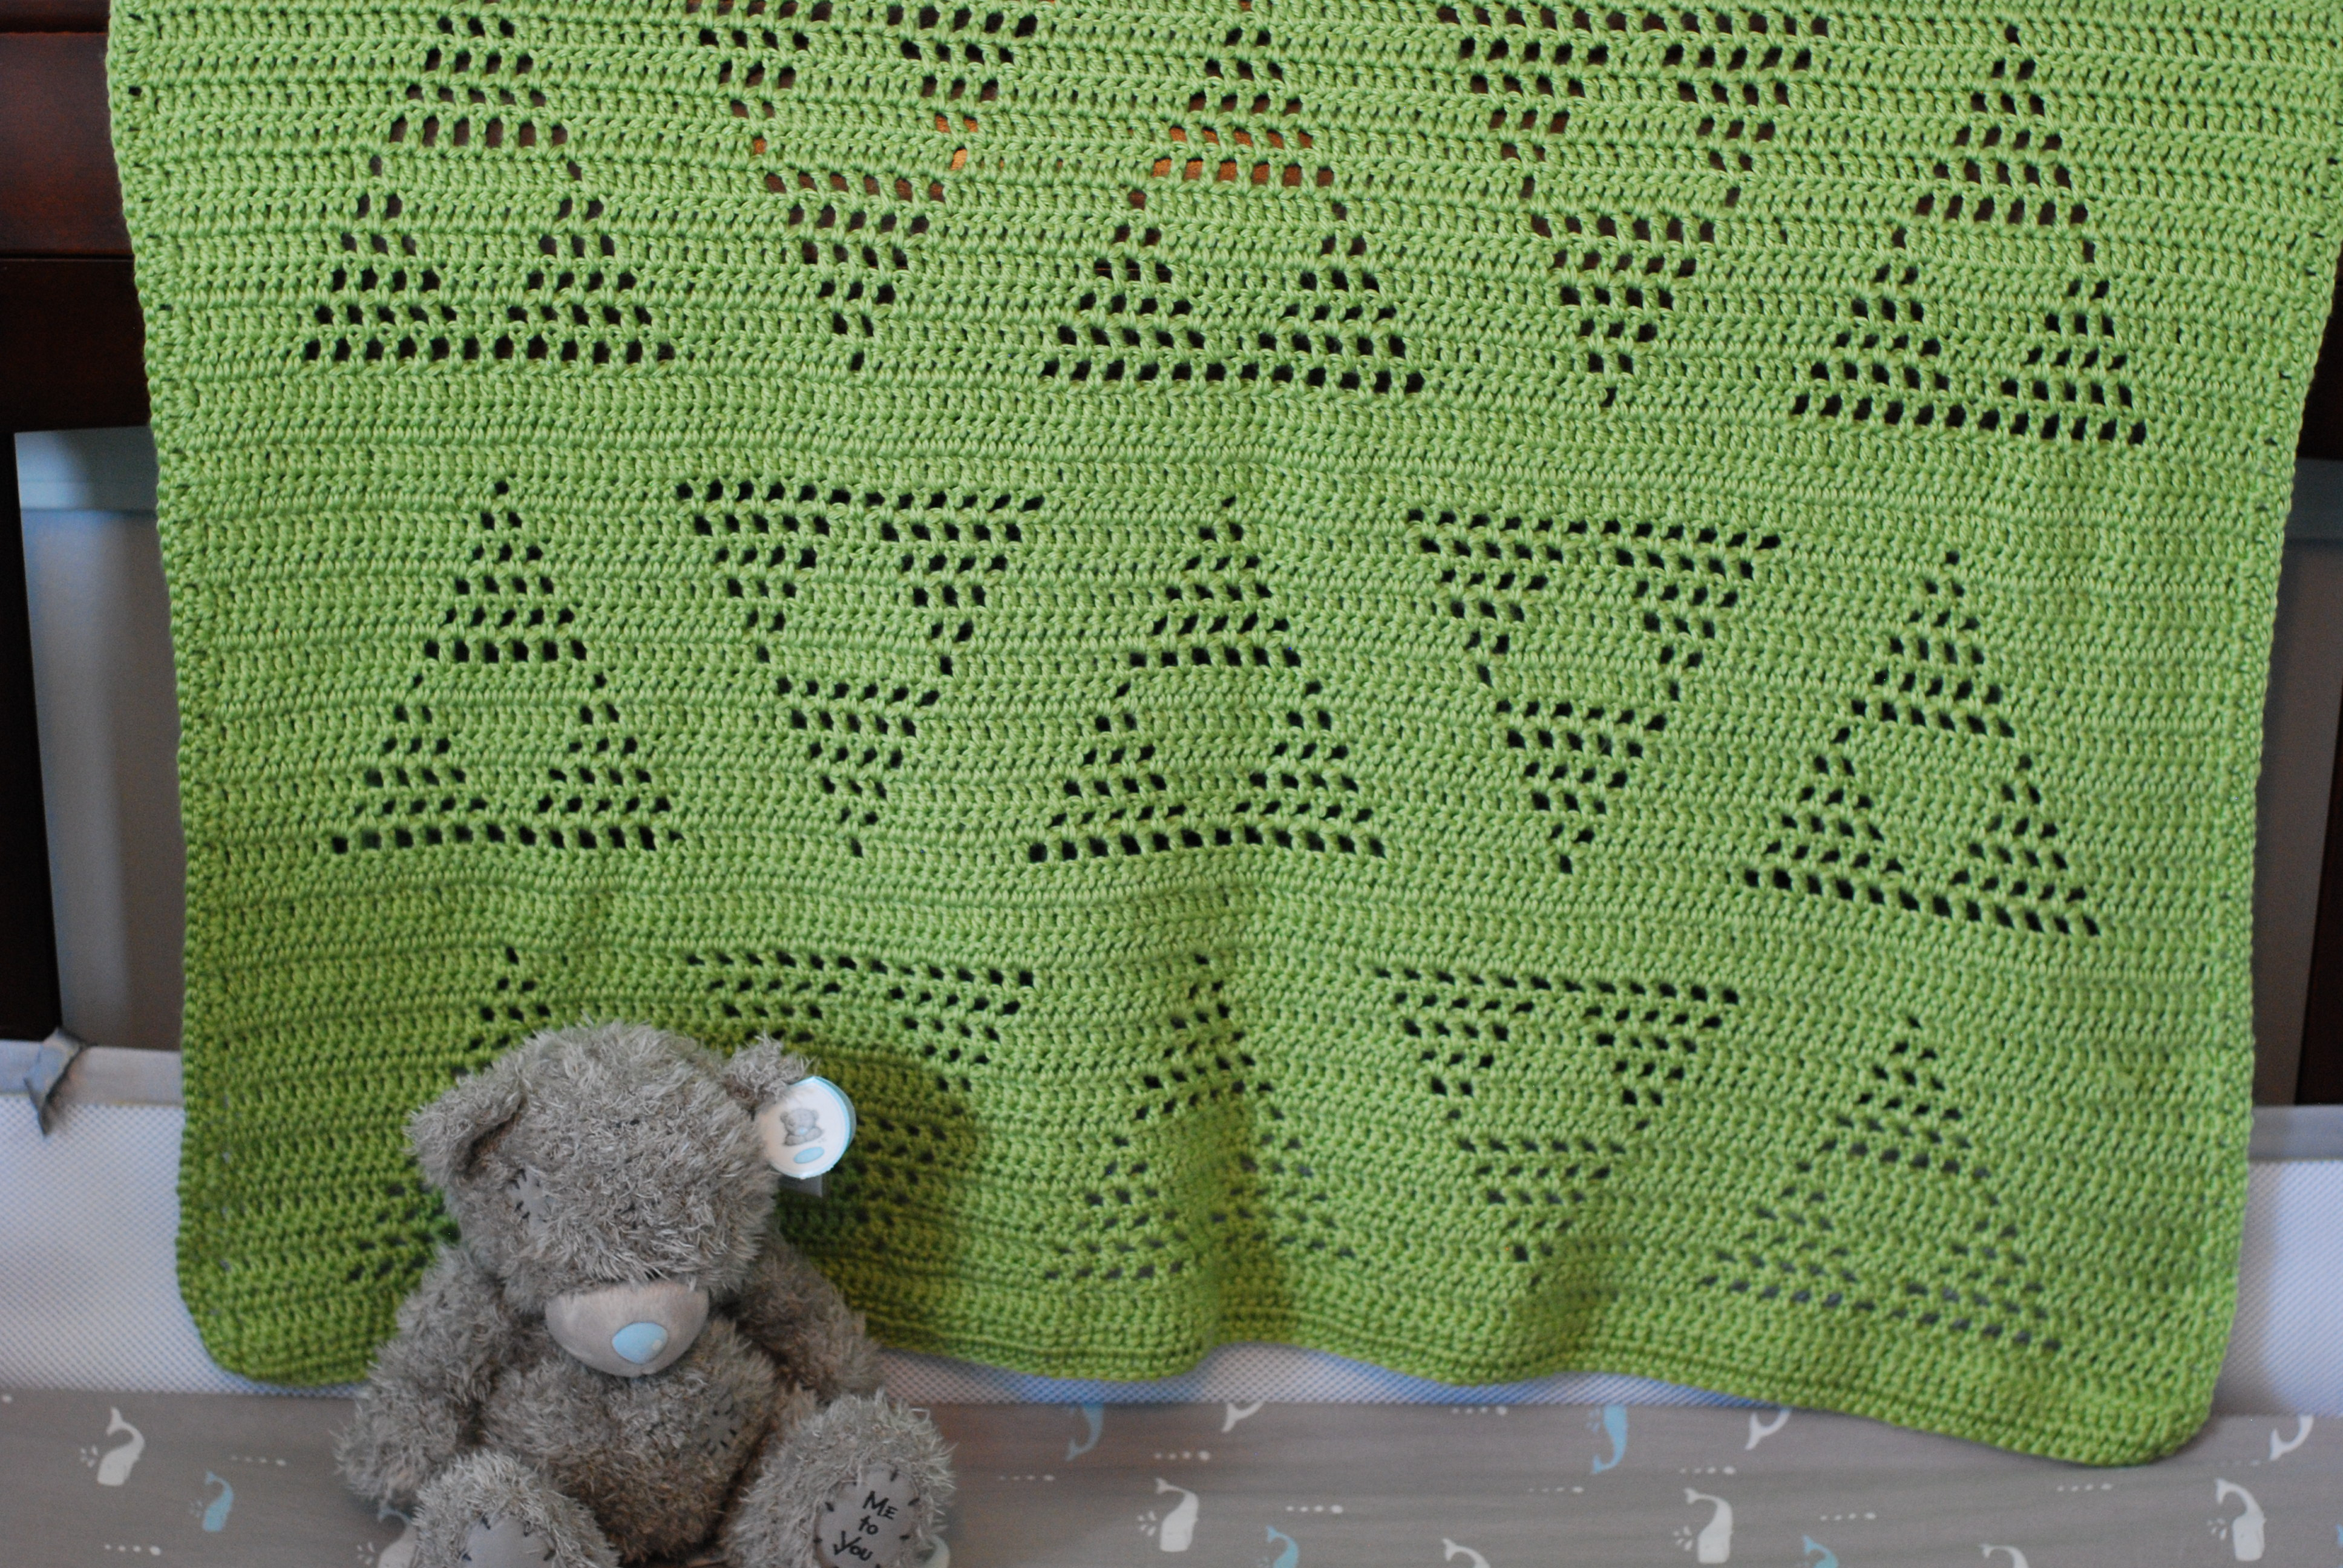 Filet Crochet Afghan Patterns Triangle Triforce Motif Crochet Blanket Pattern Wallflowergal